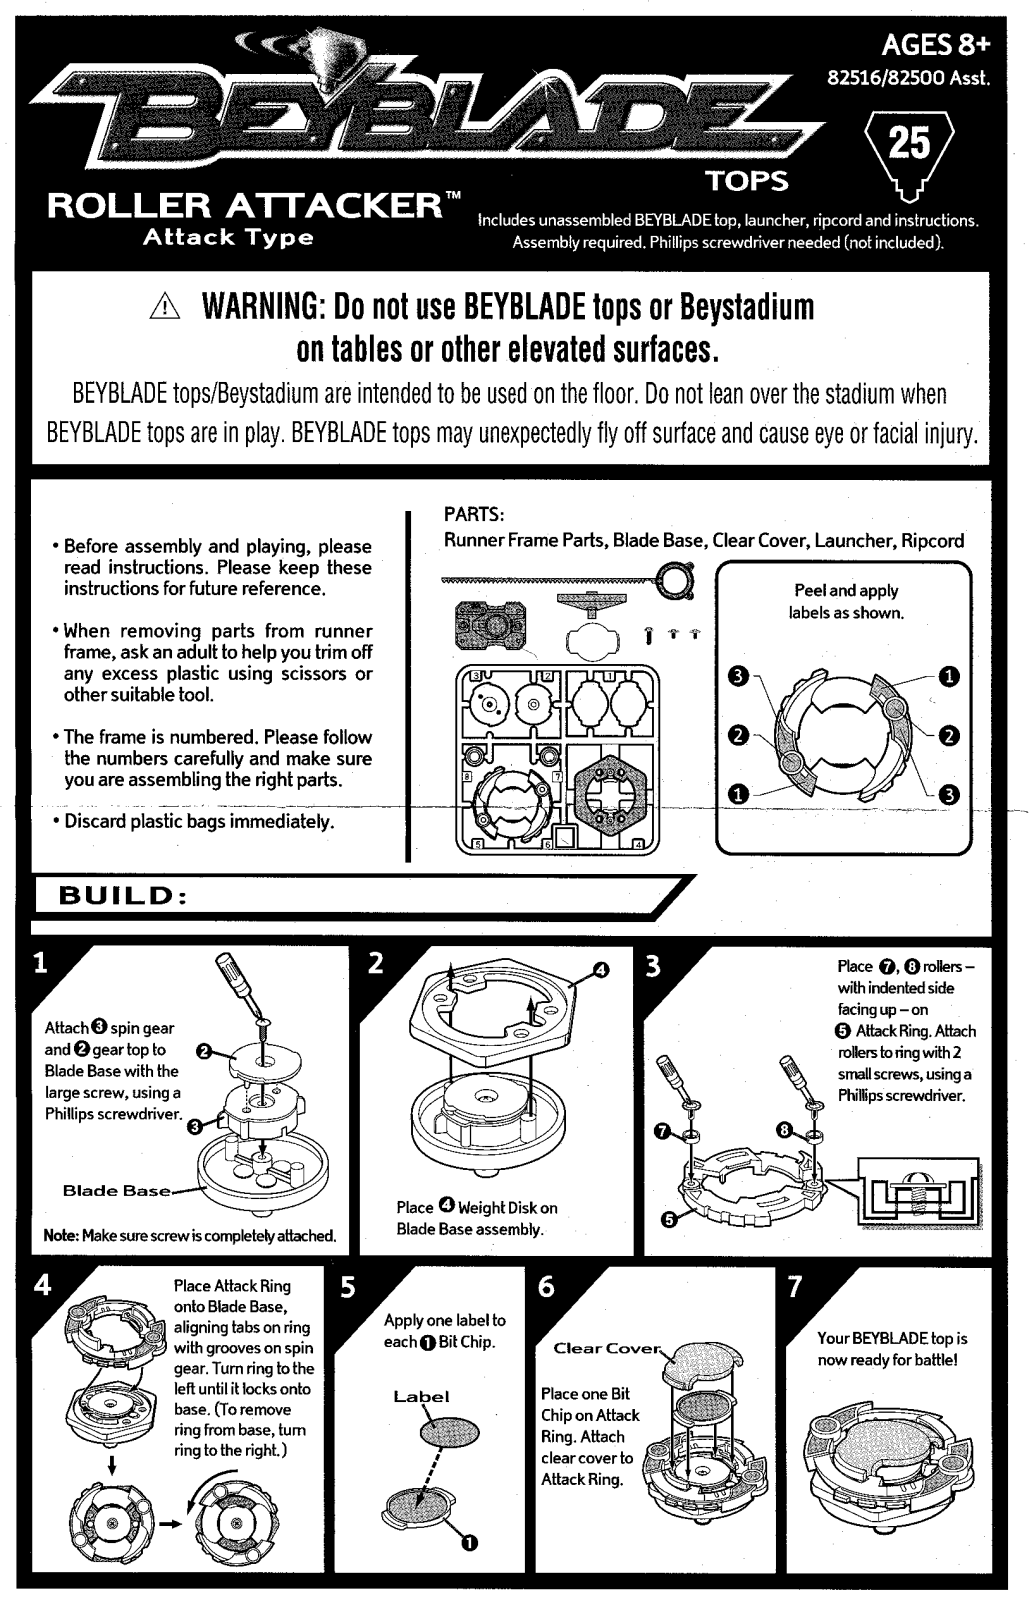 HASBRO Beyblade Tops Roller Attacker User Manual